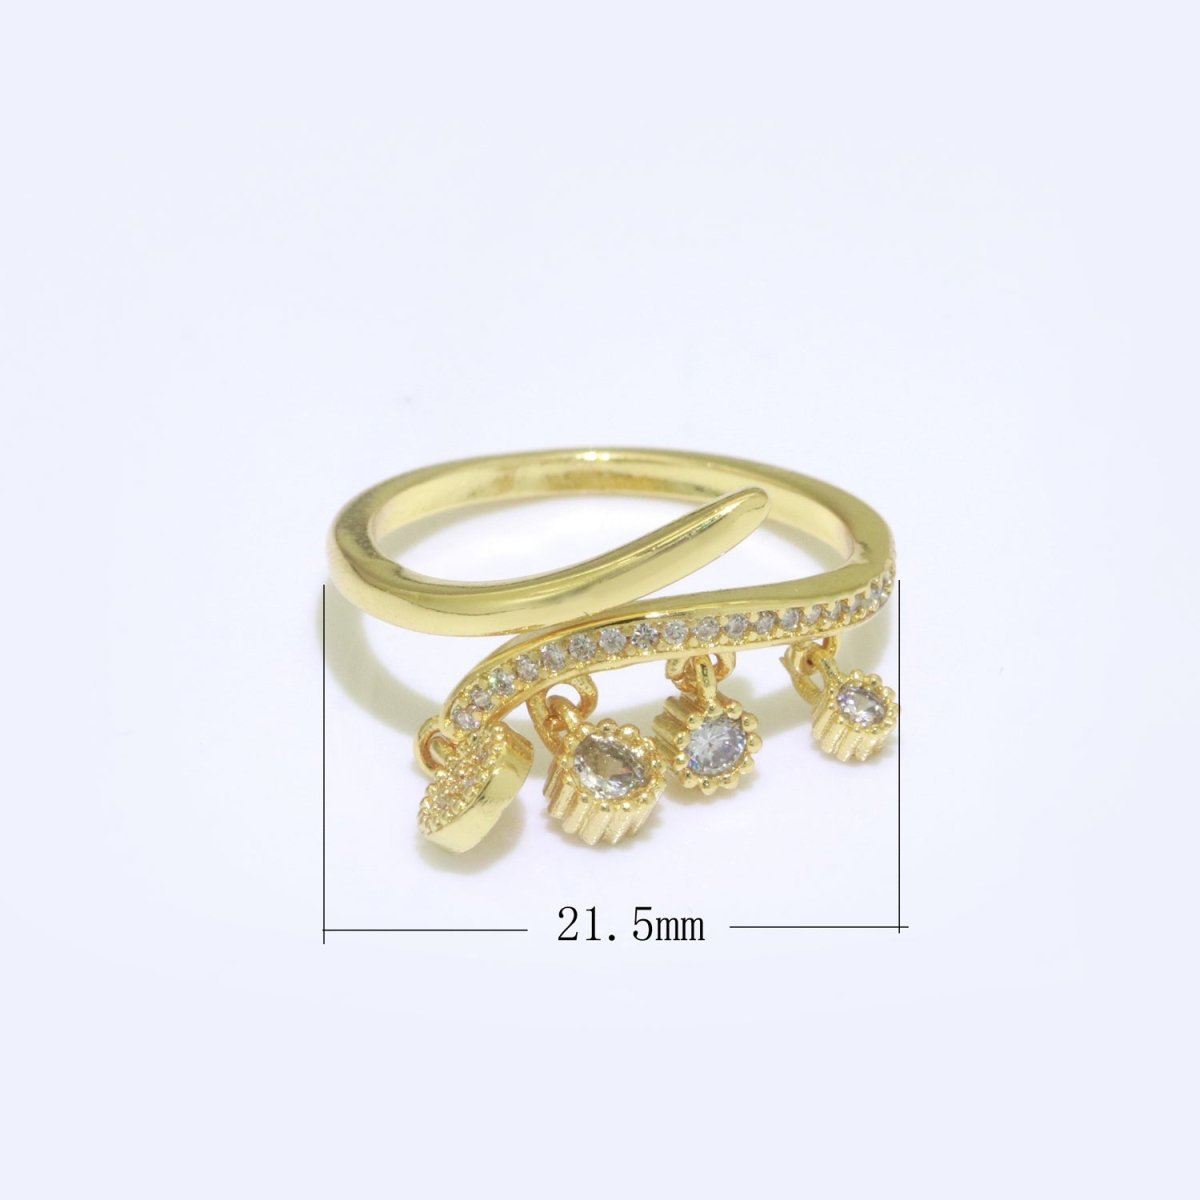 24k Gold Filled Dangling Charm Ring - Sun Burst Ring - Open Adjustable Ring - Gold Dangle Charm Ring S-130 - DLUXCA